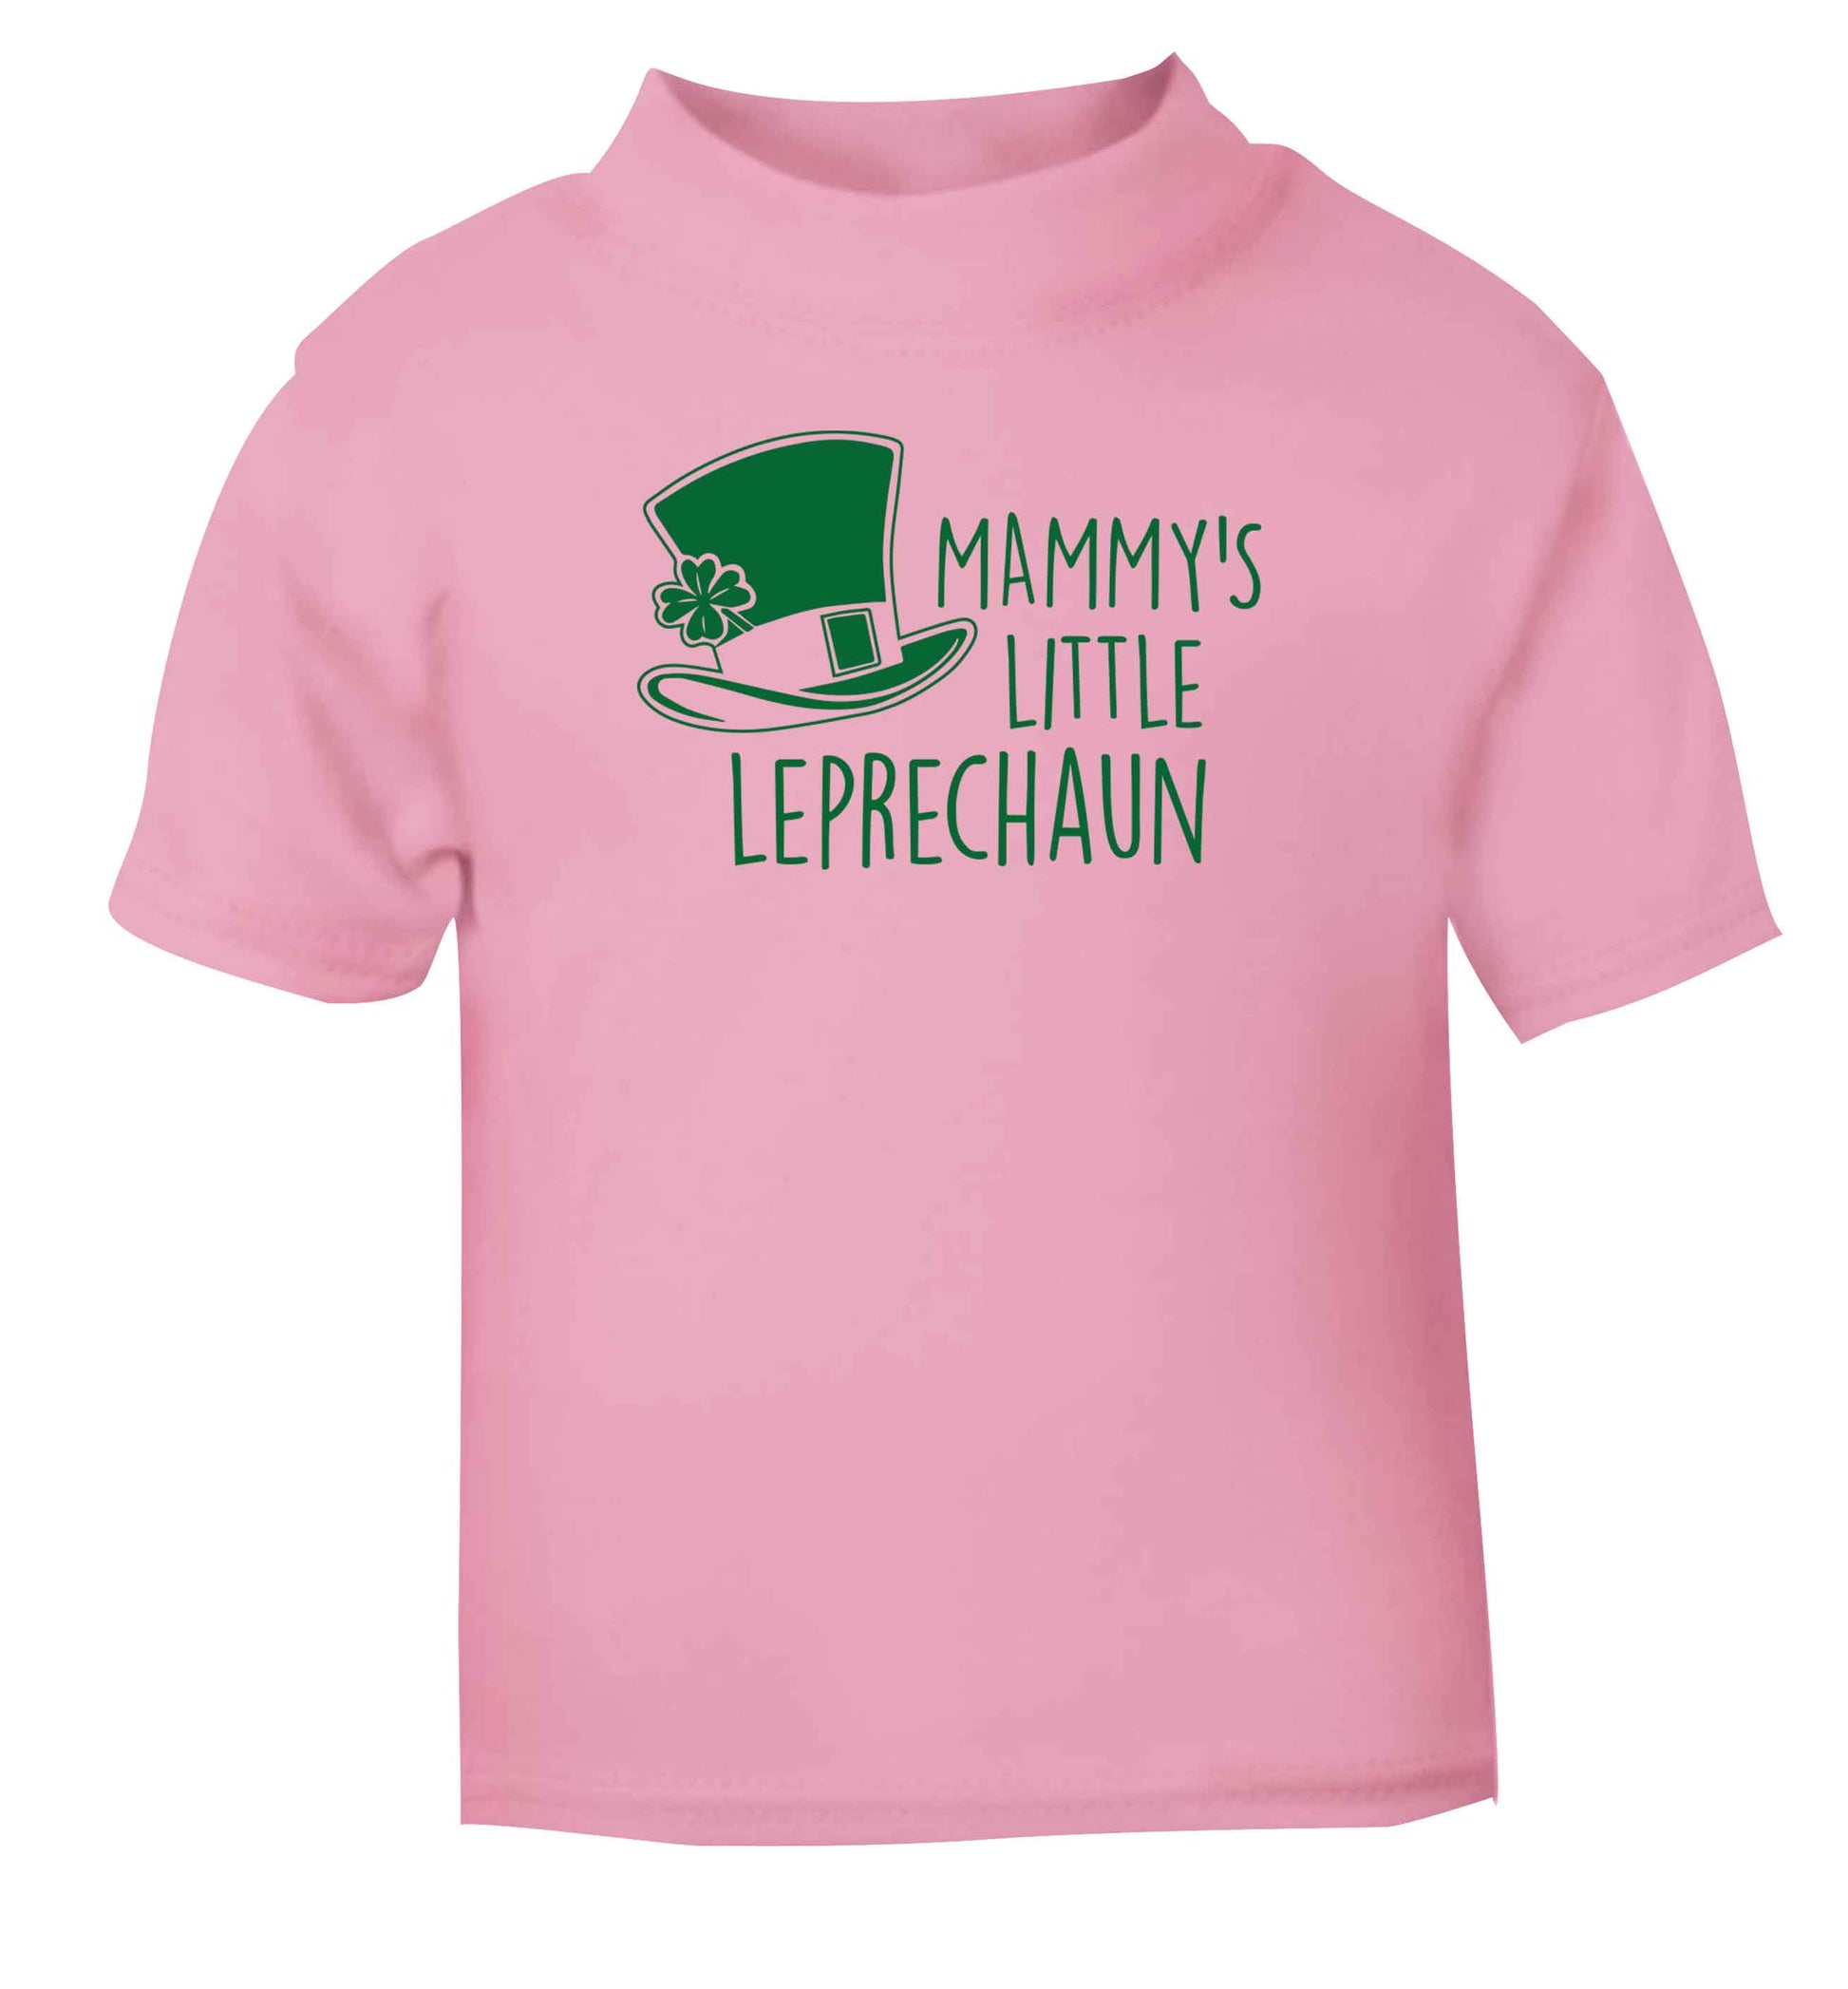 Mammy's little leprechaun Children's light pink Tshirt 12-13 Years